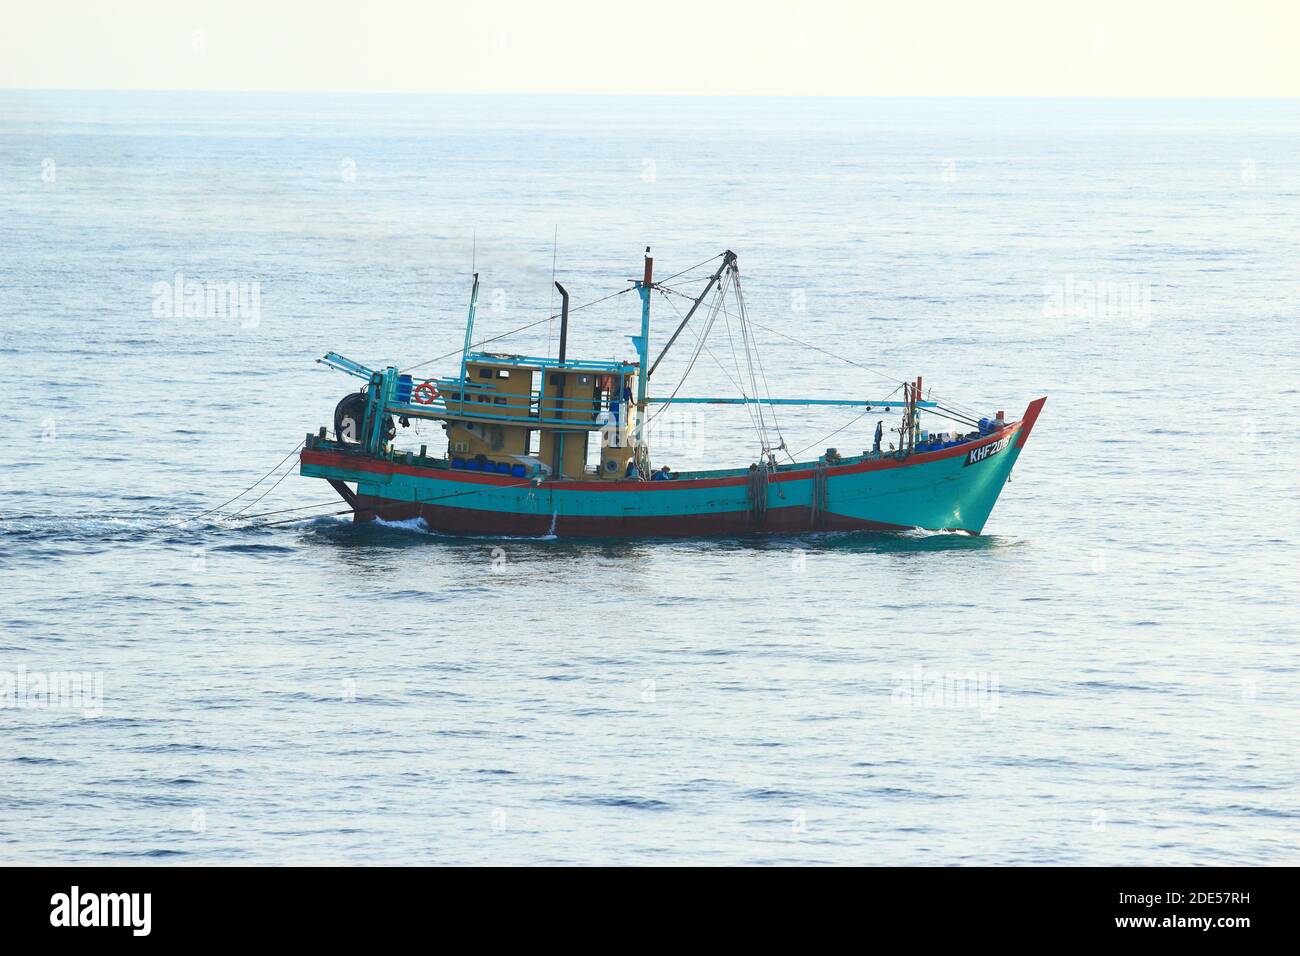 Traditionelles myanmarisches/burmesisches Fischerboot, das bei ruhigem Wetter mit 3 Personen an Bord in der Andamanensee geschleppt wird Stockfoto